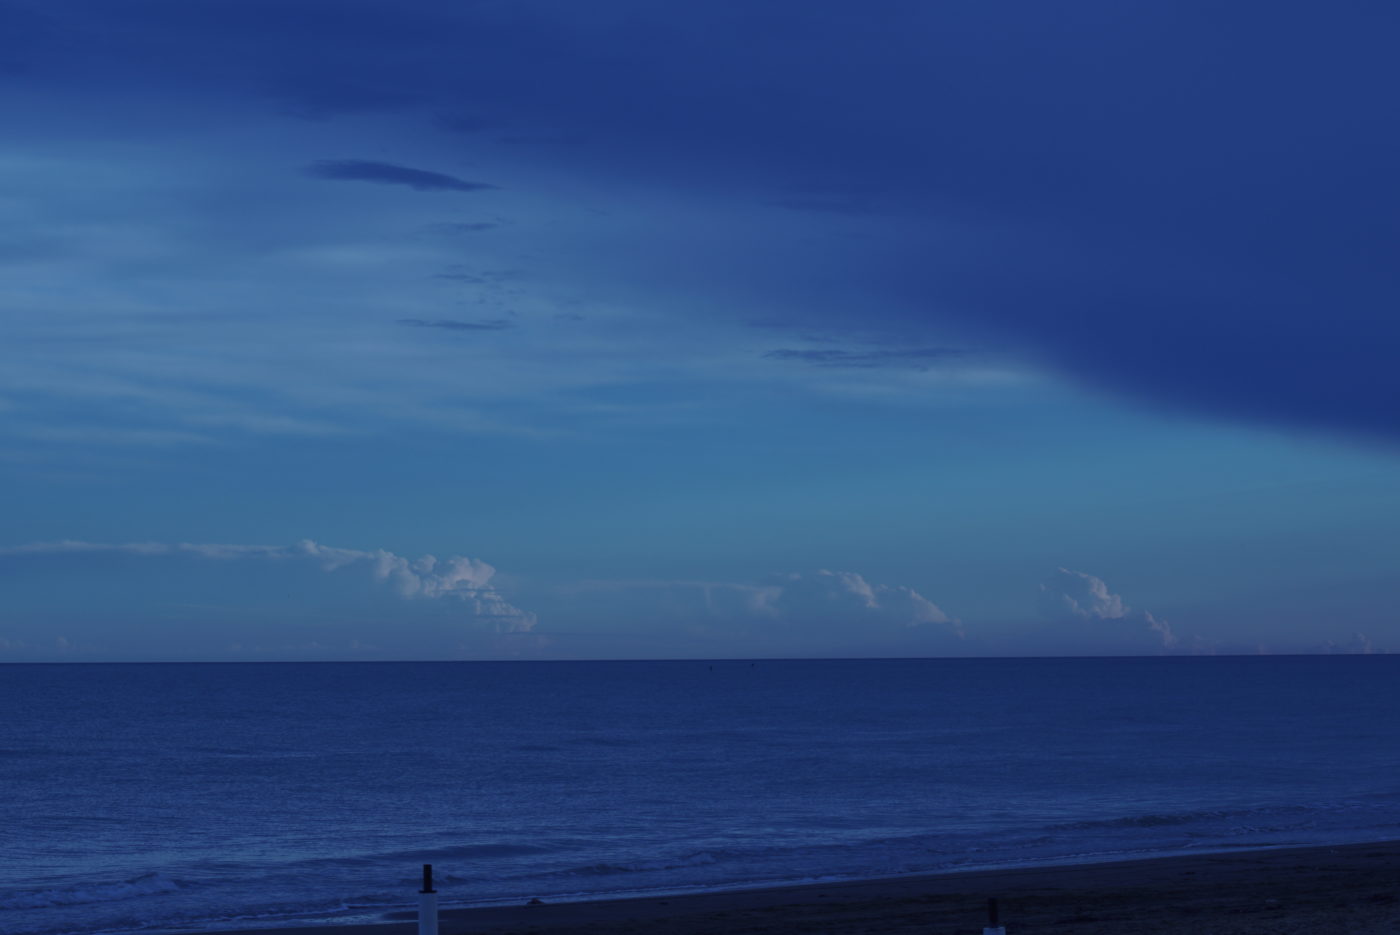 Das bild ist von vollen Blautönen geprägt. Im Vordergrund ist einstück Strand zu sehen und dahinter schließt die fast spiegelglatte Adria an. In der Ferne ist eine mächtige Wolkenbank zu sehen.